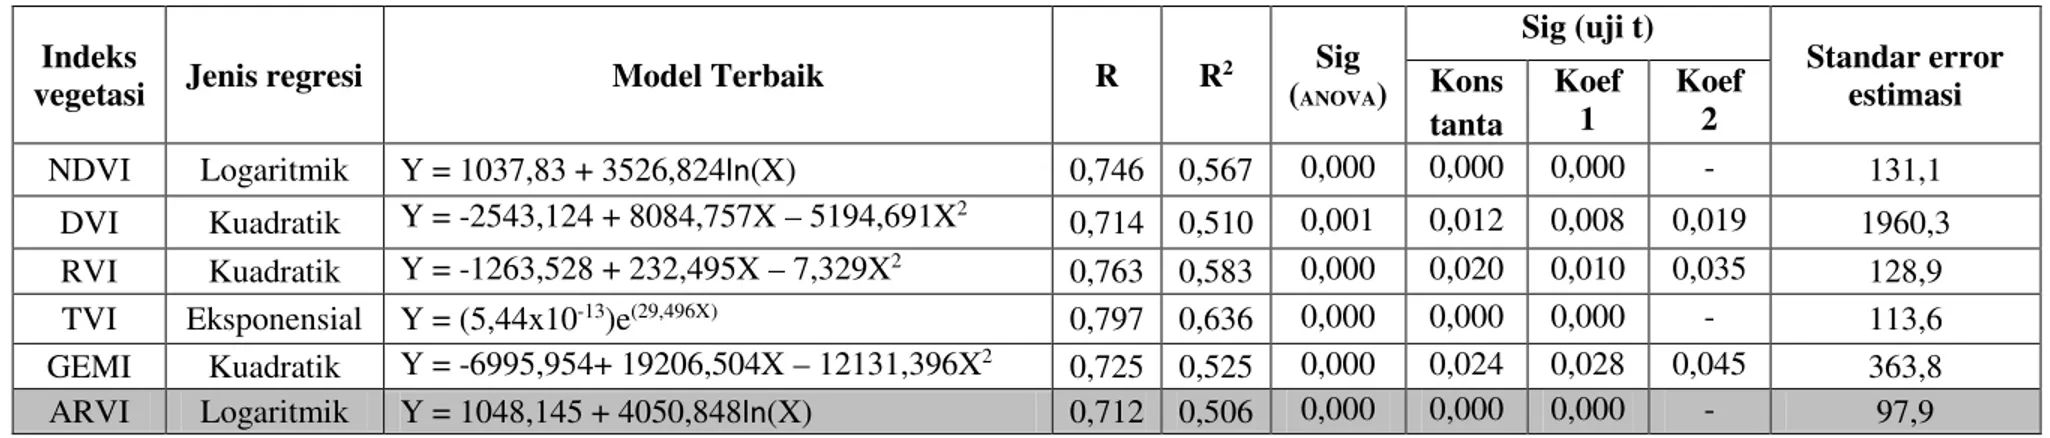 Tabel 2: Rekapitulasi Statistik Model Terbaik Masing-masing Indeks Vegetasi 